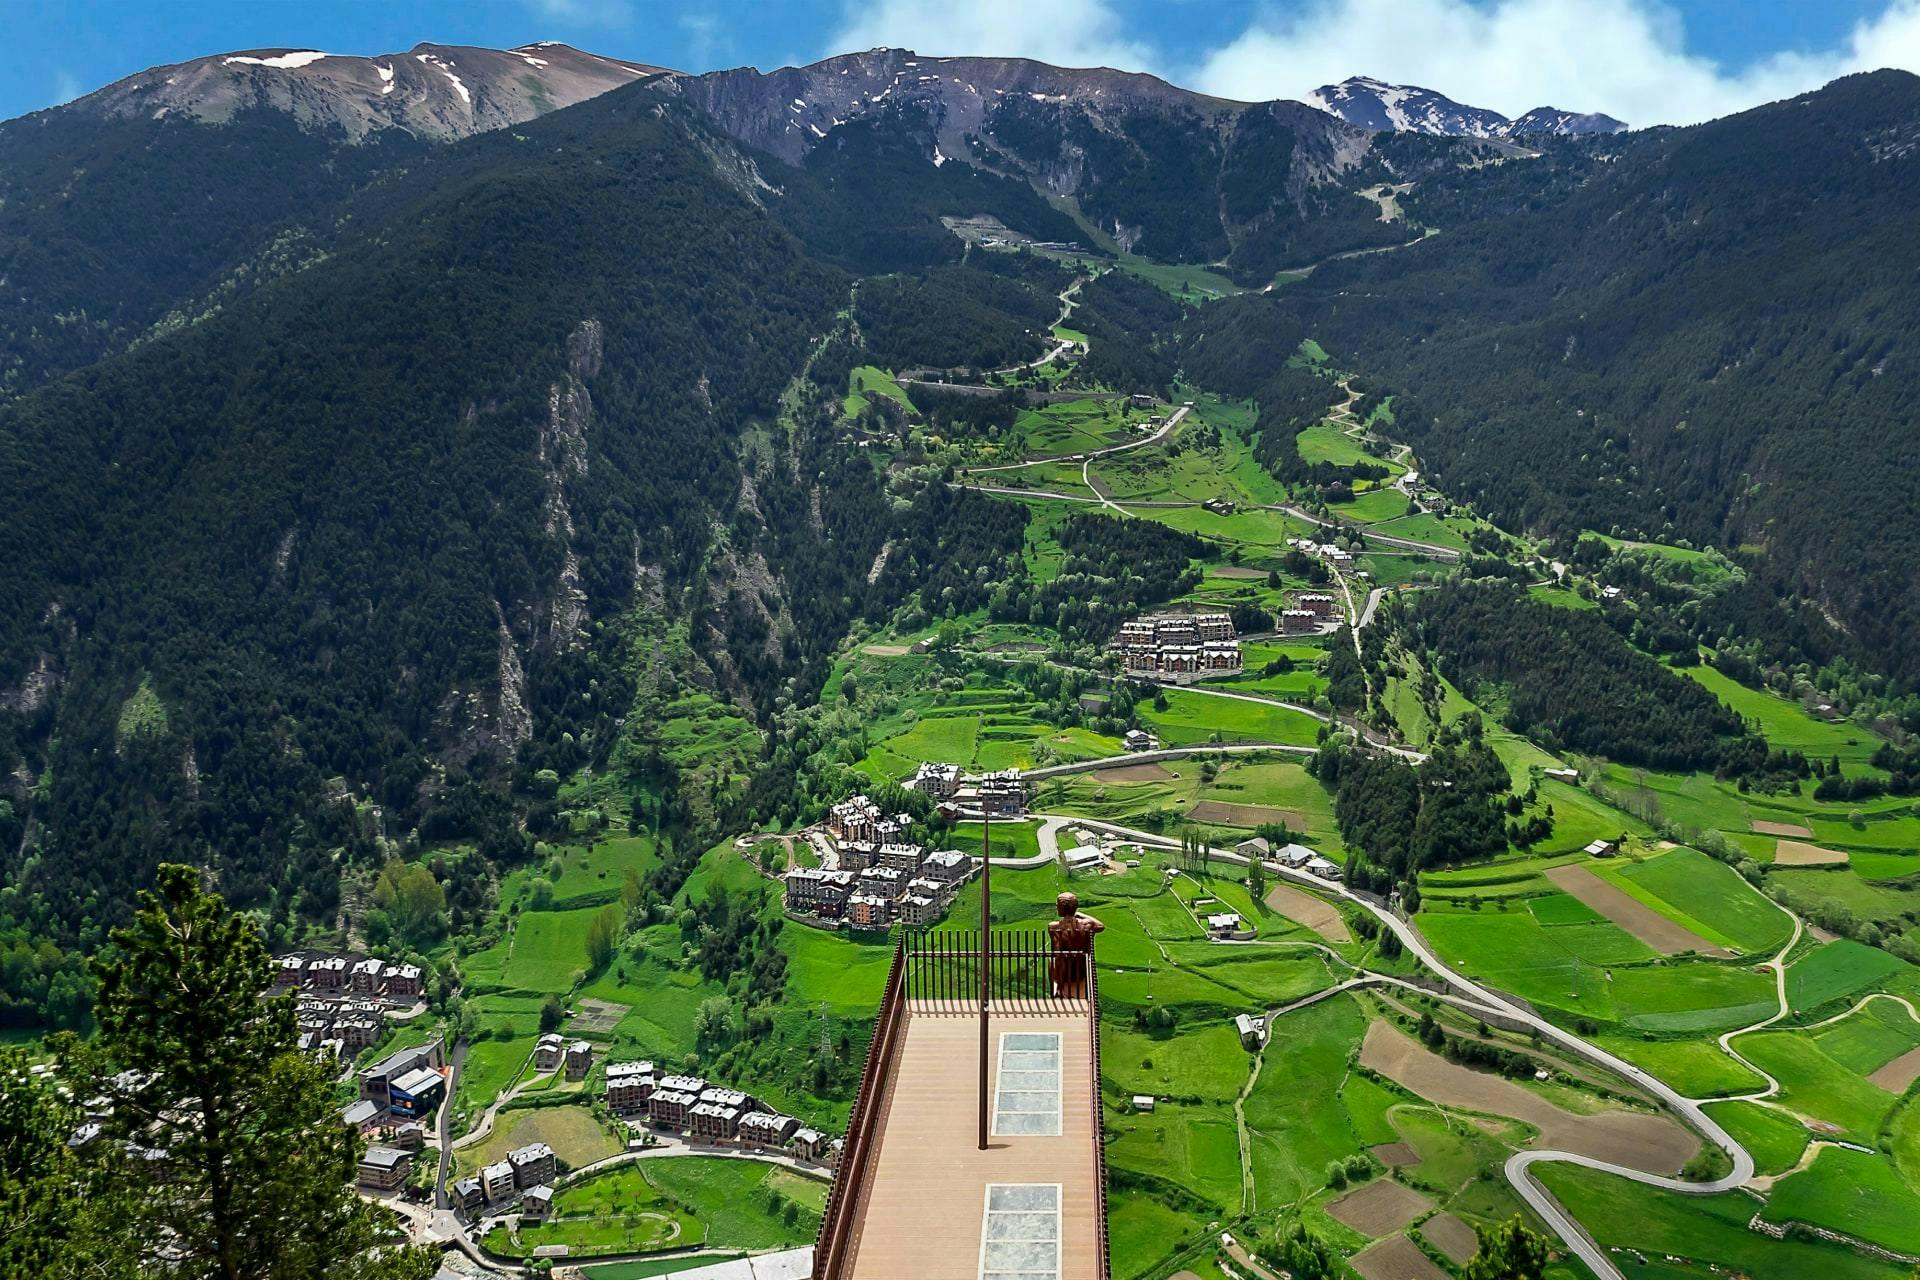 Andorran countryside